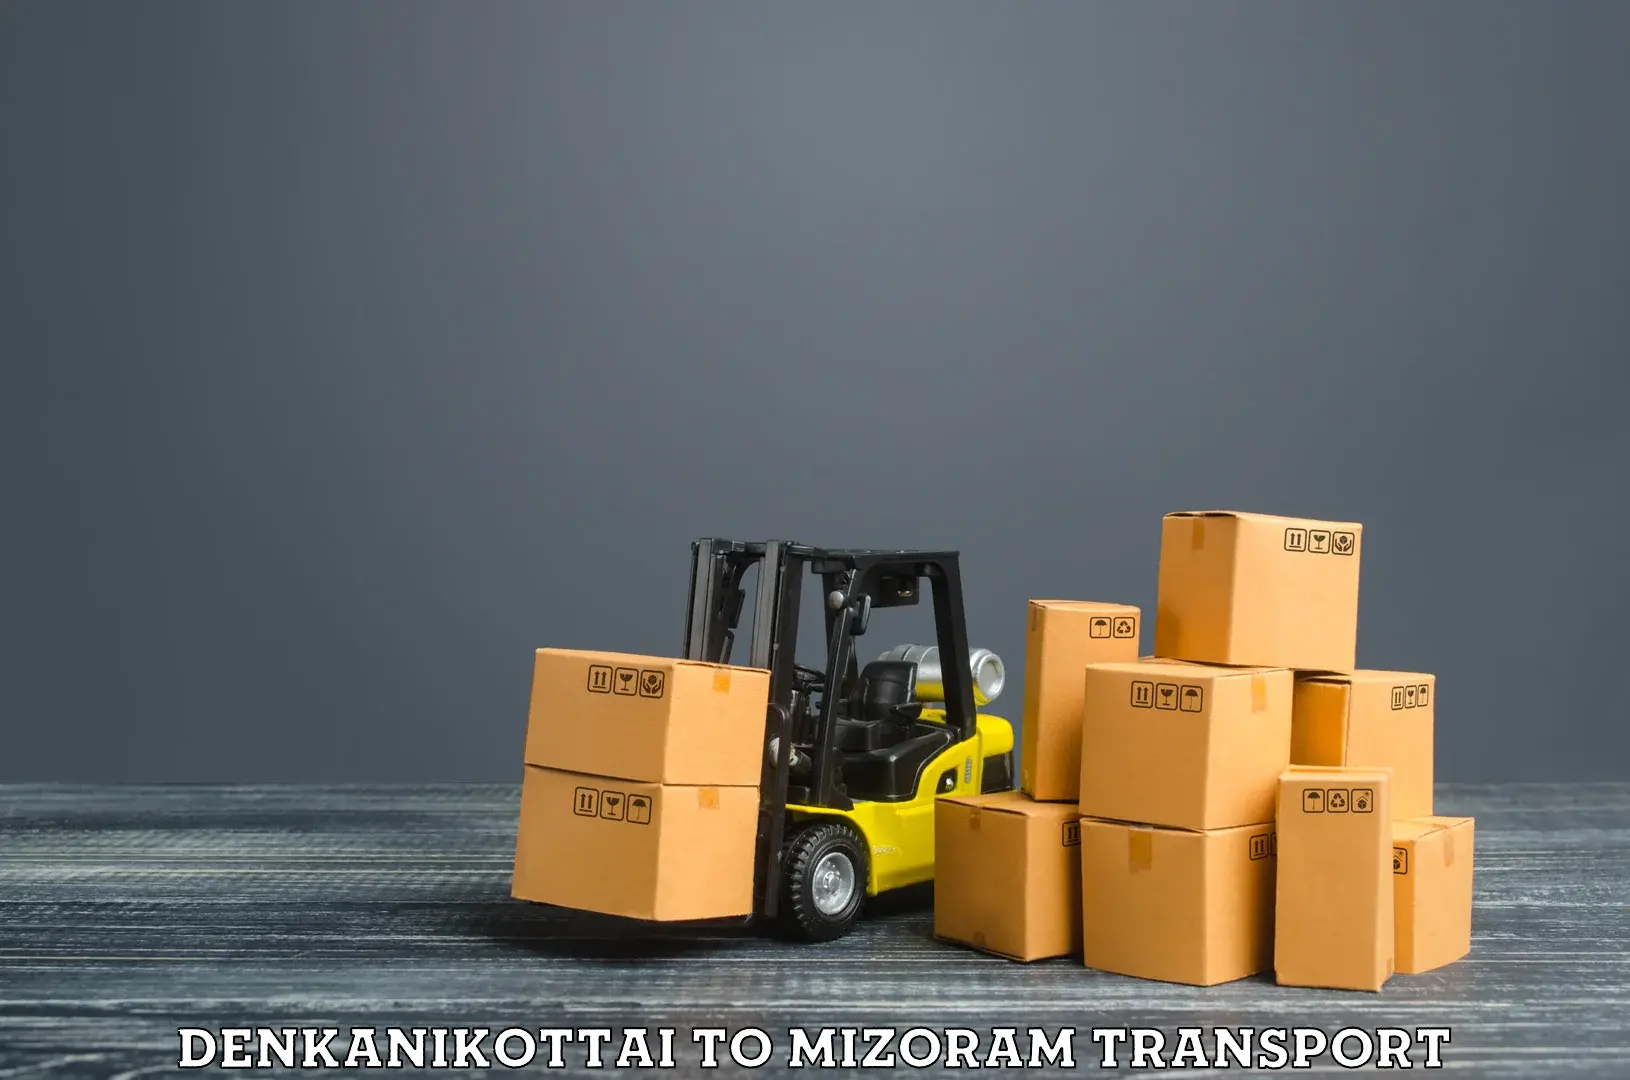 India truck logistics services Denkanikottai to Aizawl